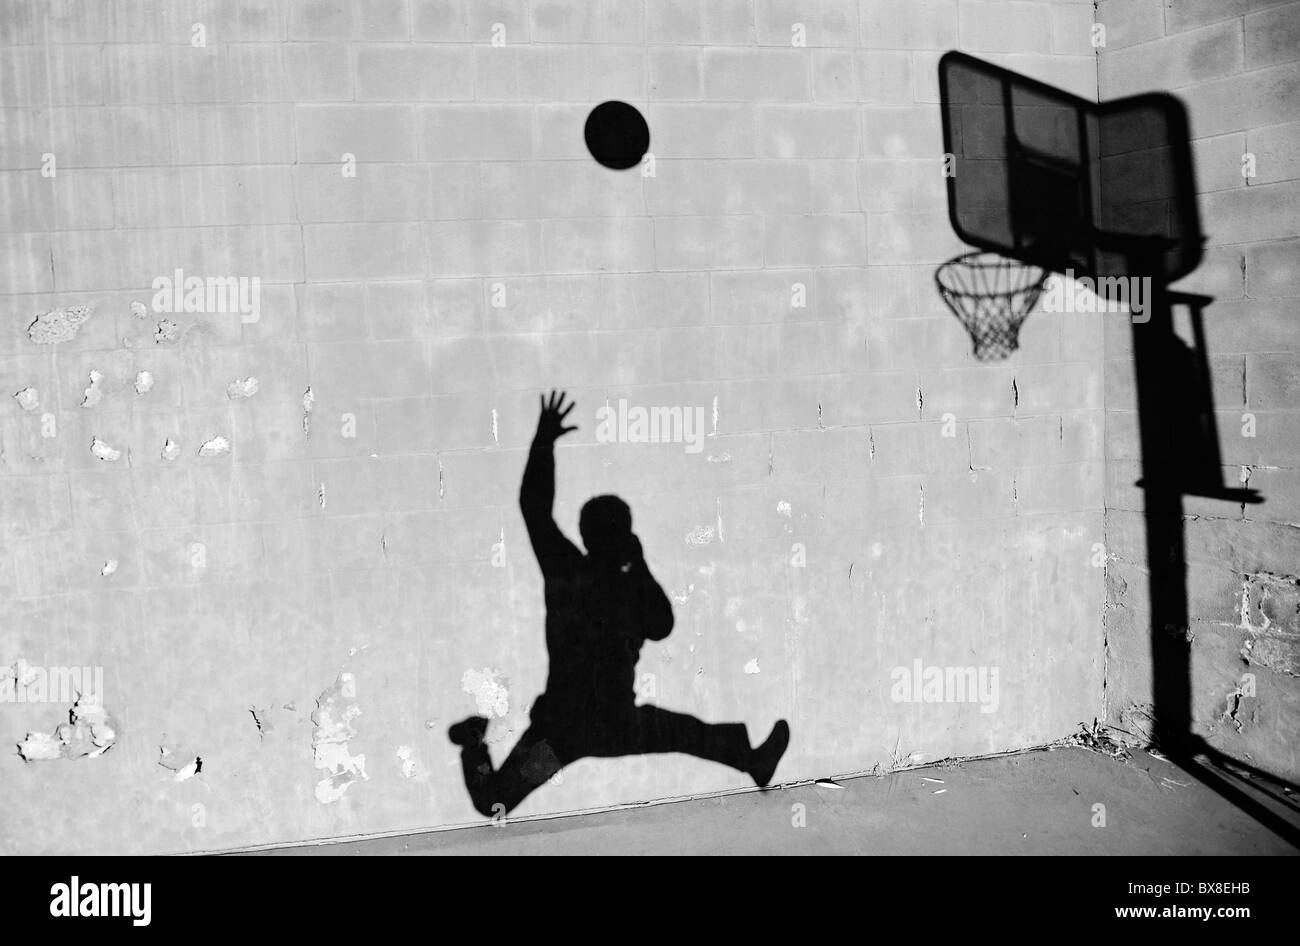 Une silhouette d'un homme le tournage d'un basket-ball, dans le contexte d'un mur de briques avec de la peinture, dans une aire de jeux. Banque D'Images